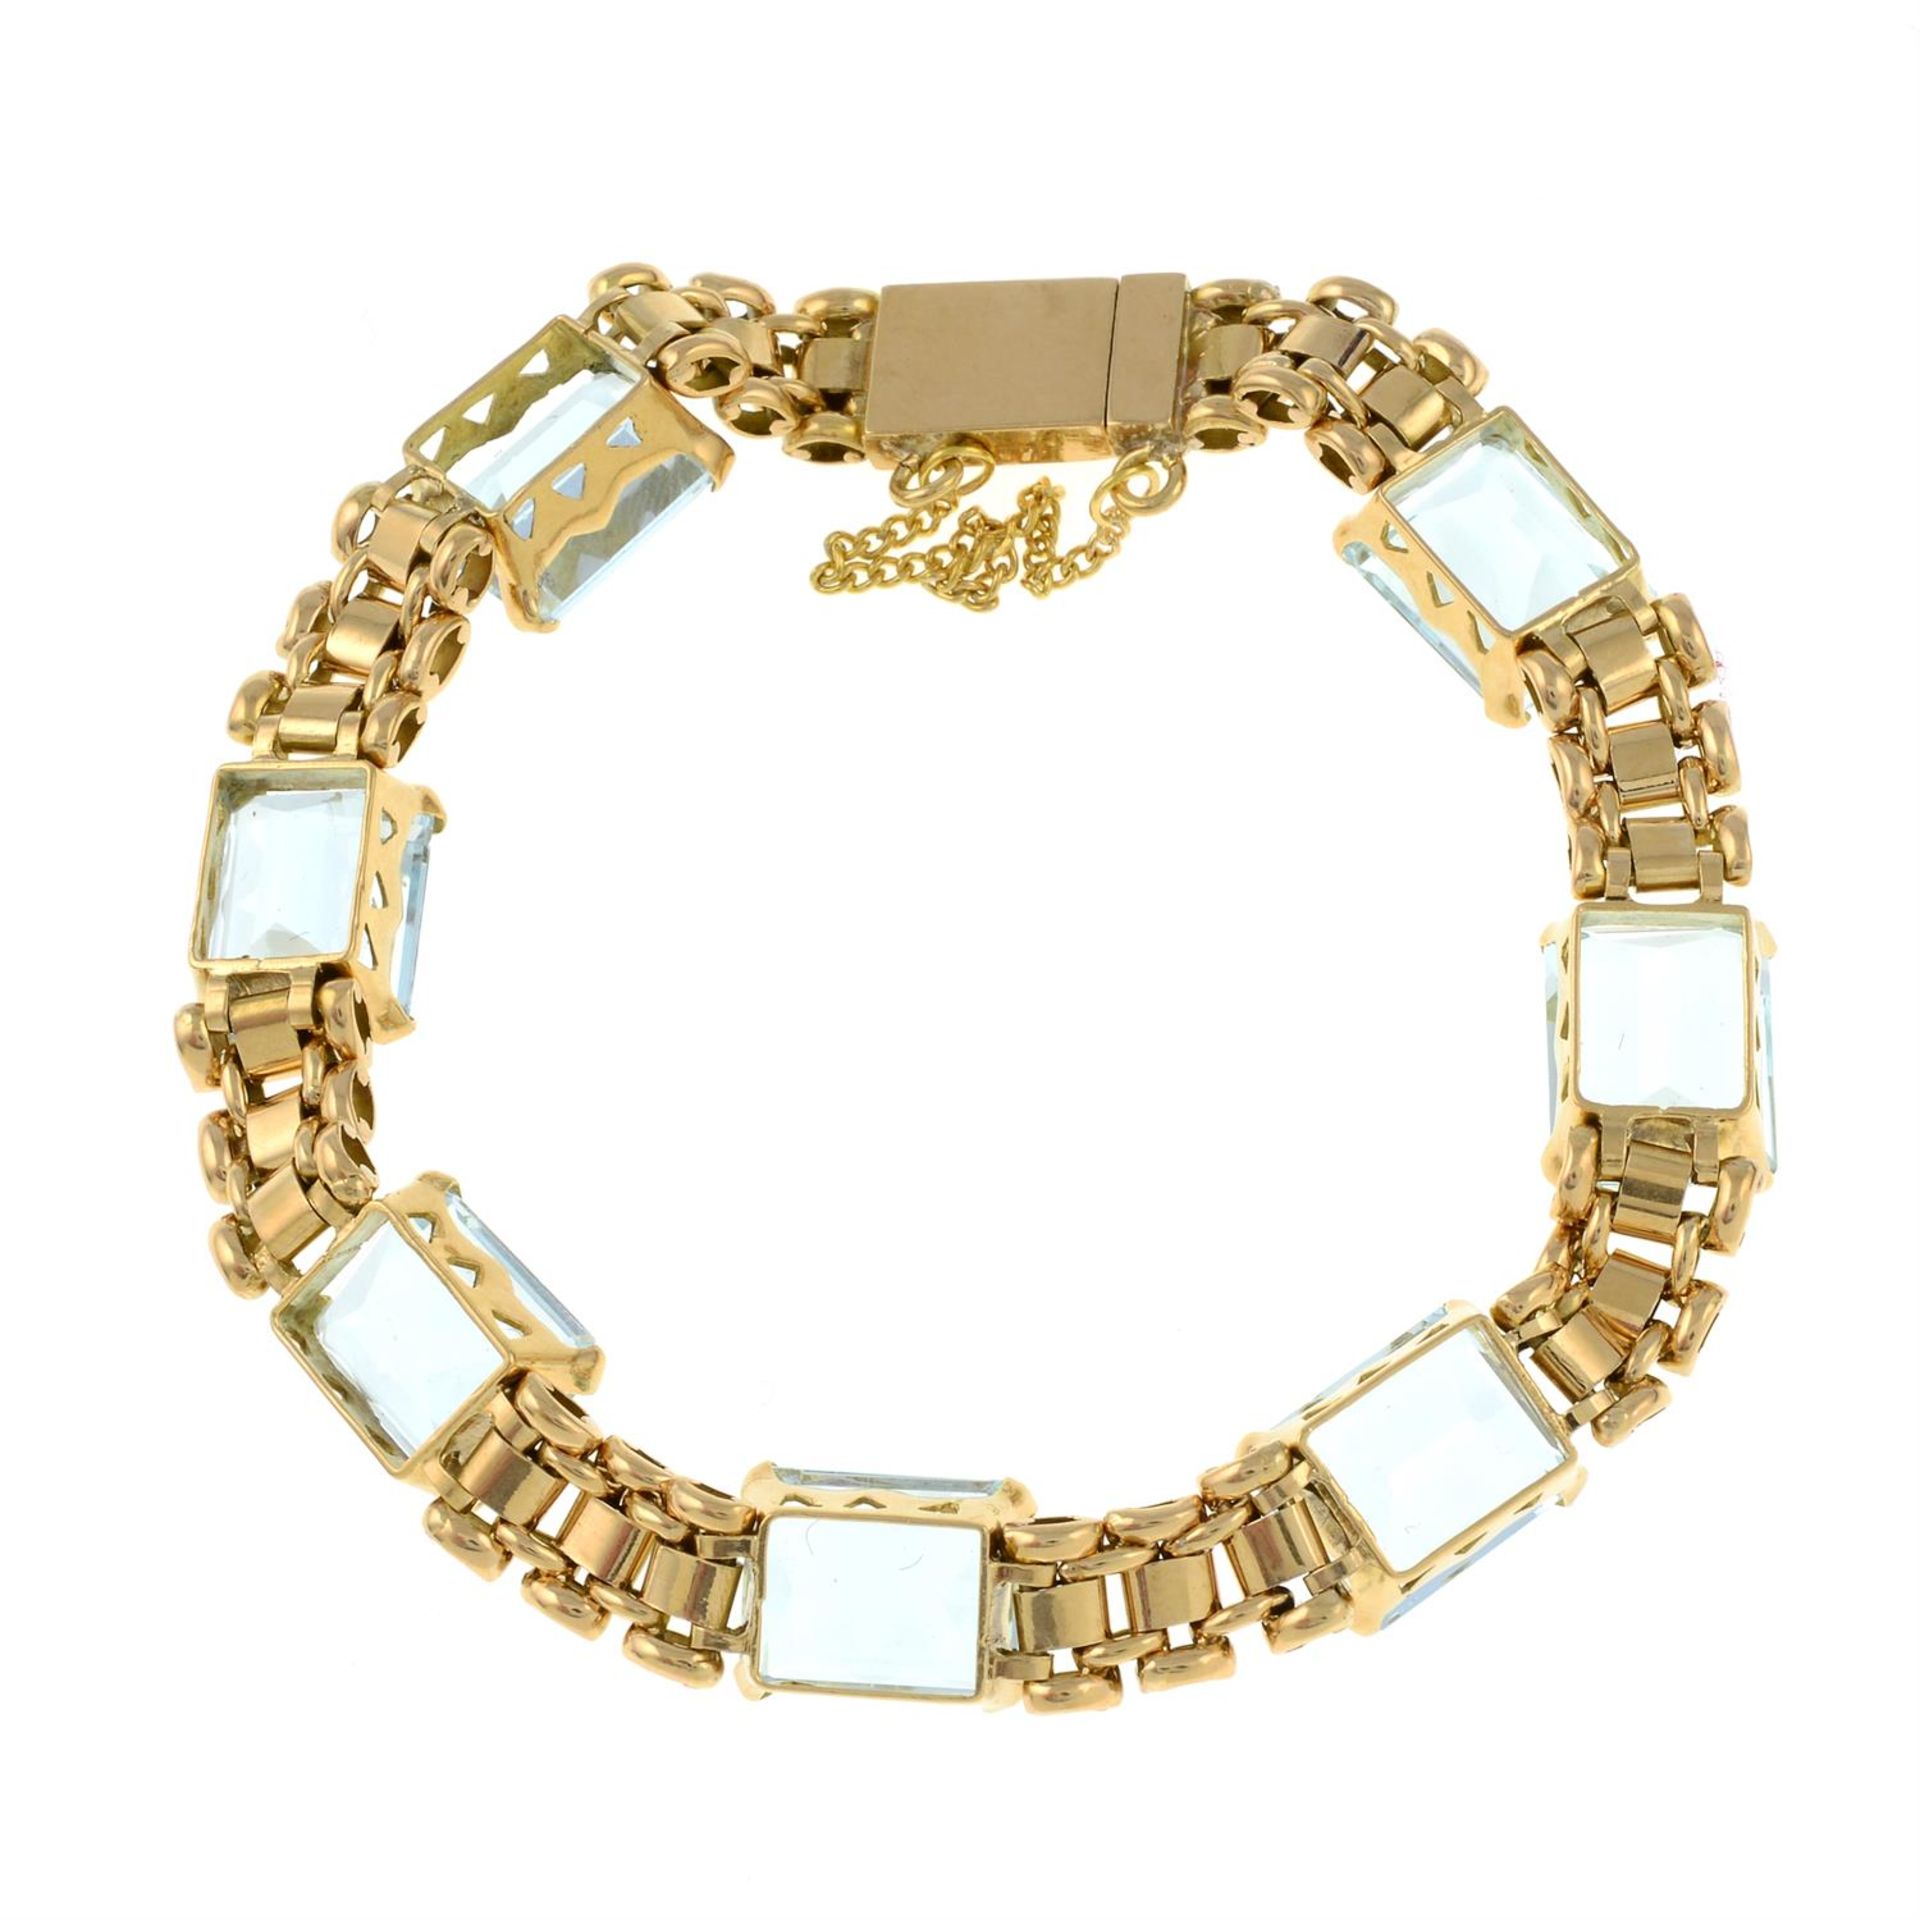 An aquamarine bracelet. - Image 2 of 2